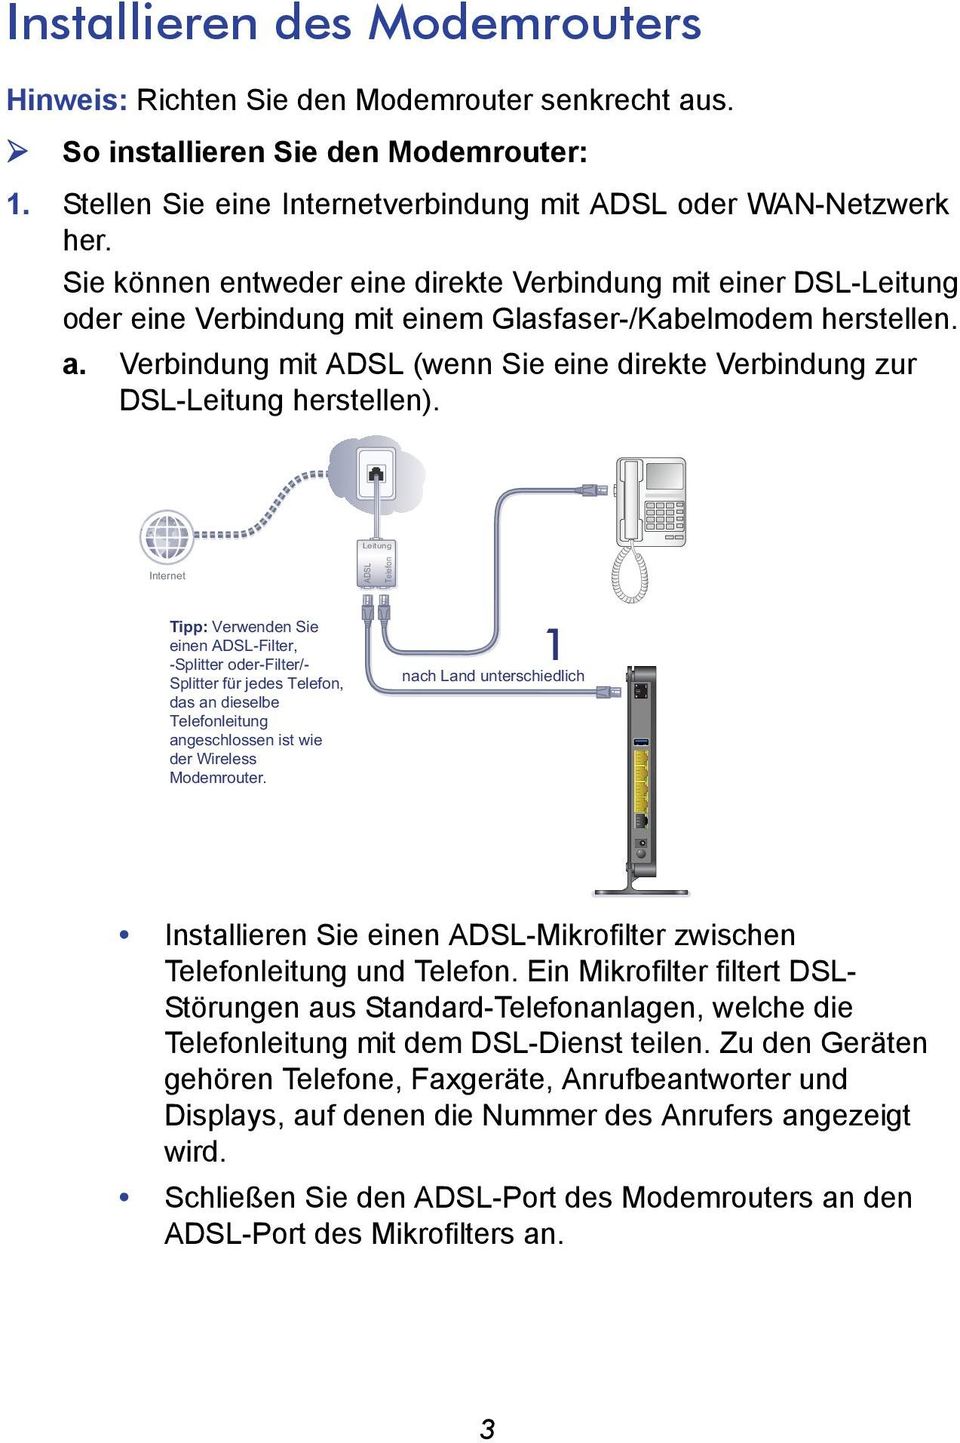 Verbindung mit ADSL (wenn Sie eine direkte Verbindung zur DSL-Leitung herstellen).